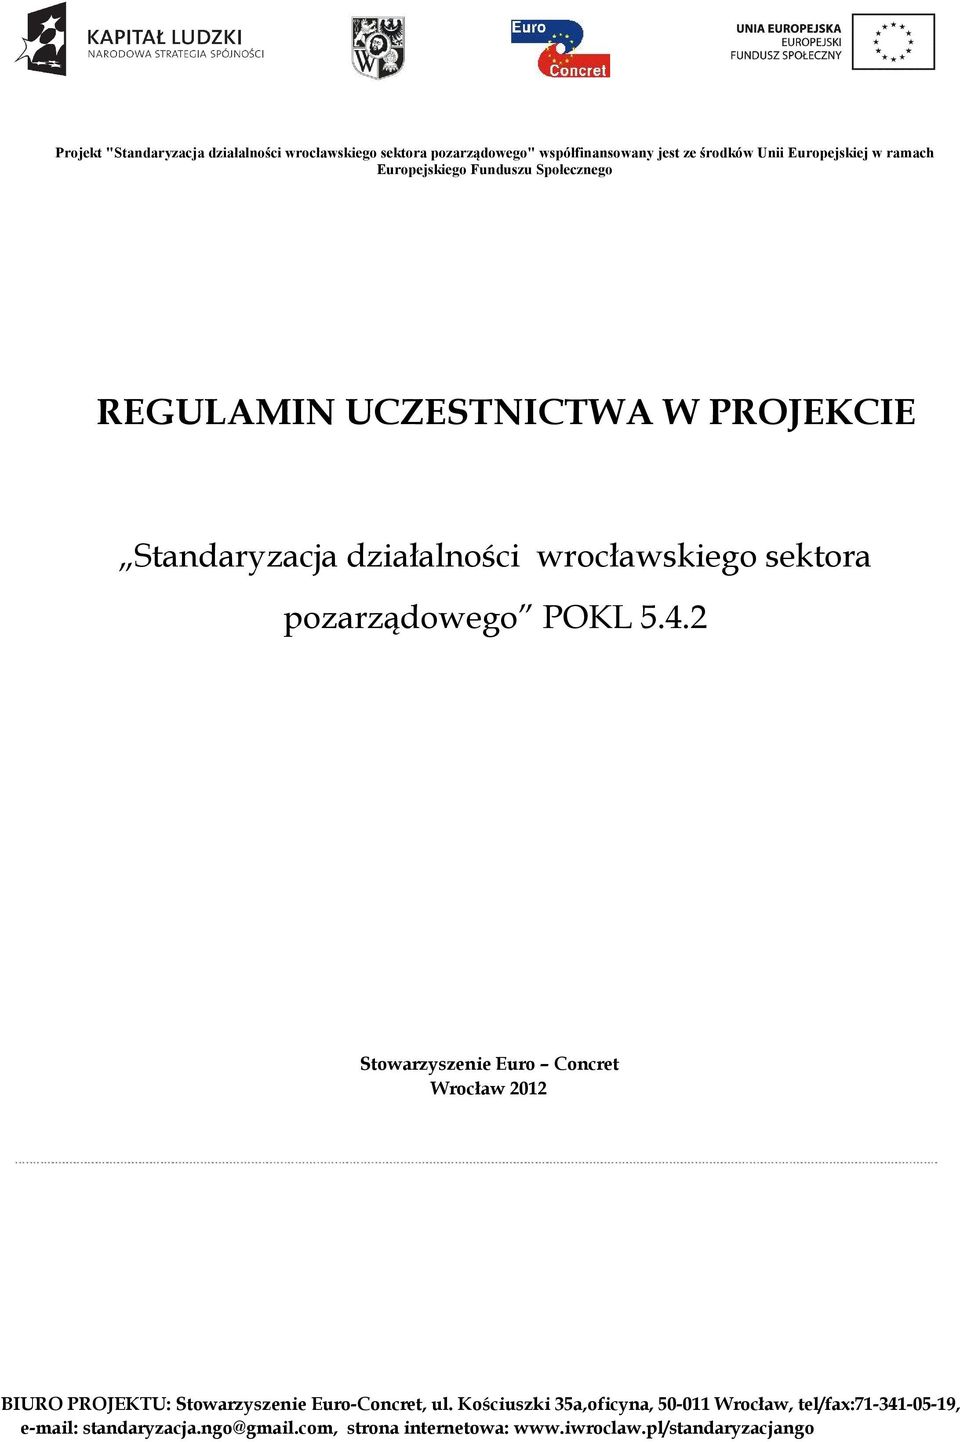 2 Stowarzyszenie Euro Concret Wrocław 2012 BIURO PROJEKTU: